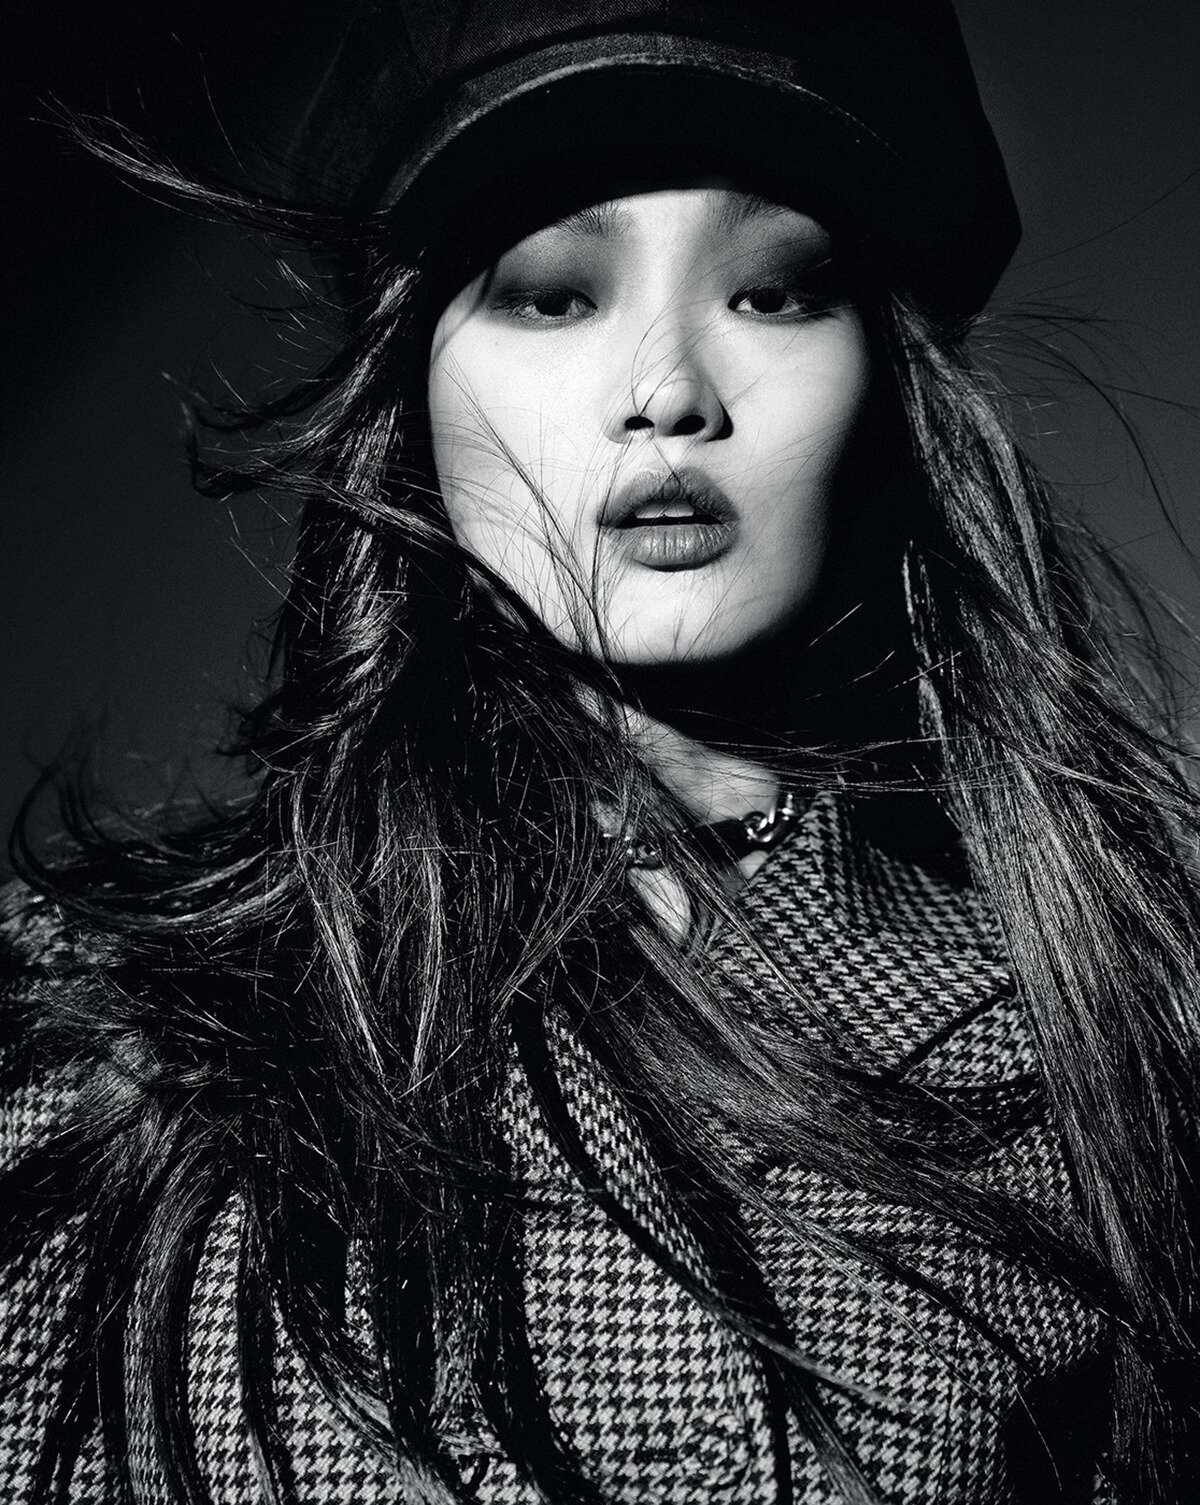 Hyun Ji Shin by Hyea W Kang for Vogue Korea June 2020 (2).jpg